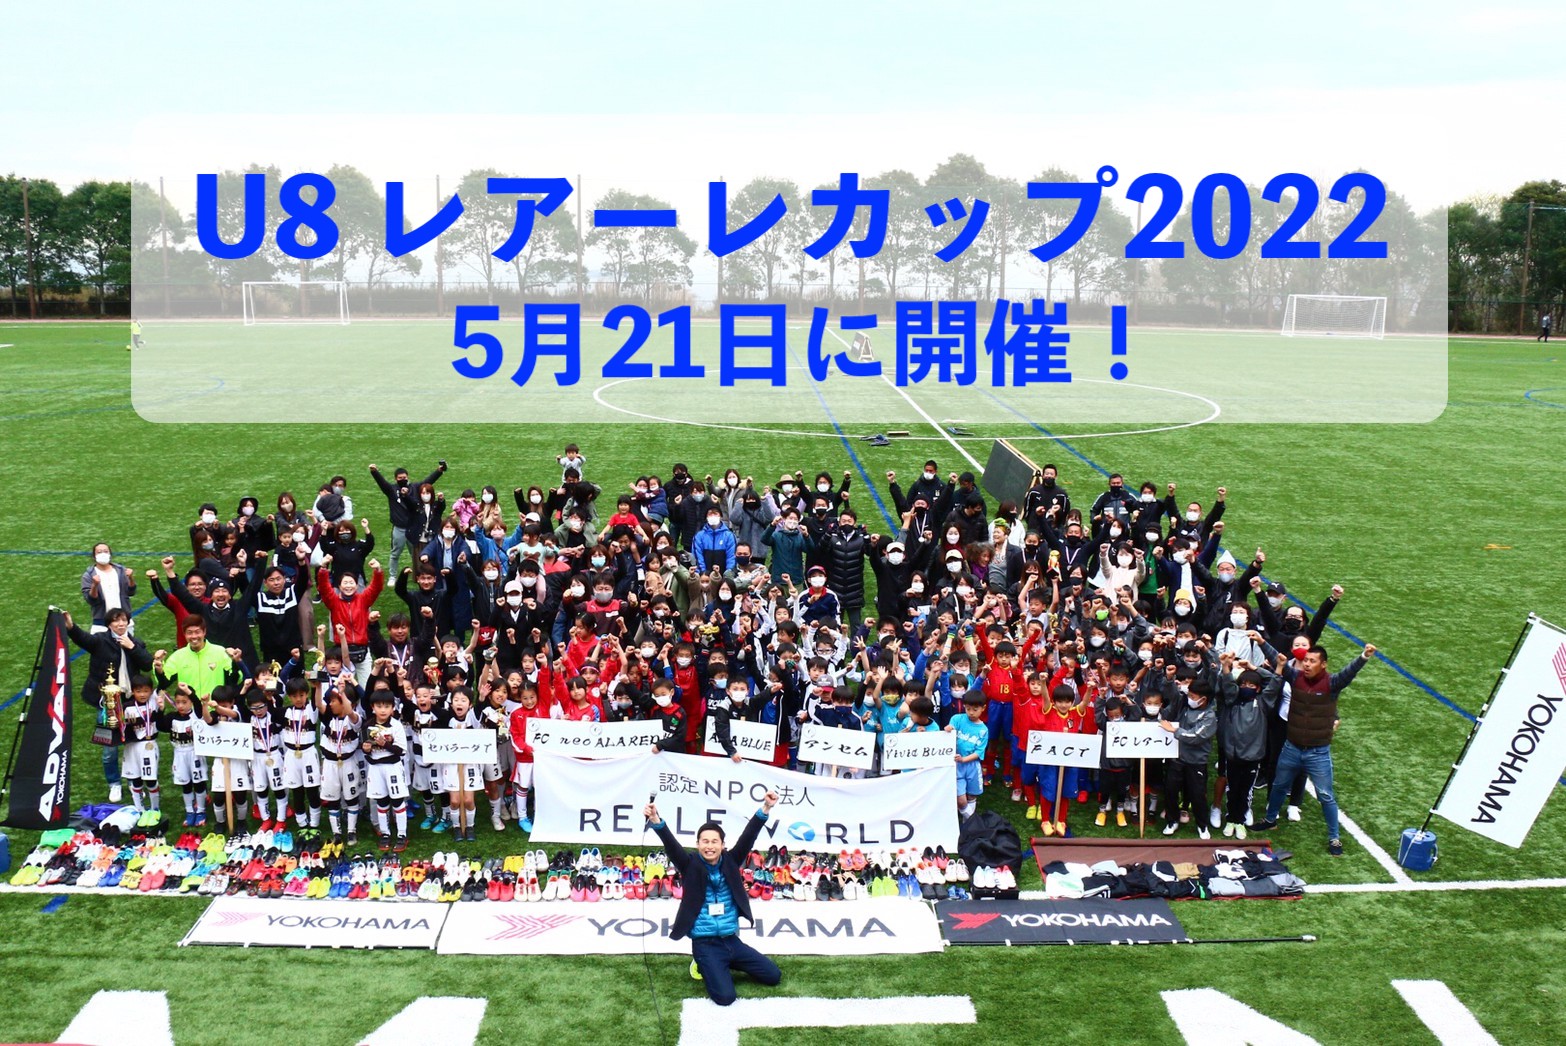 一人一品、途上国の子どもに寄付して参加する、少年サッカー大会「U-8レアーレカップ2022」が5月21日に開催!